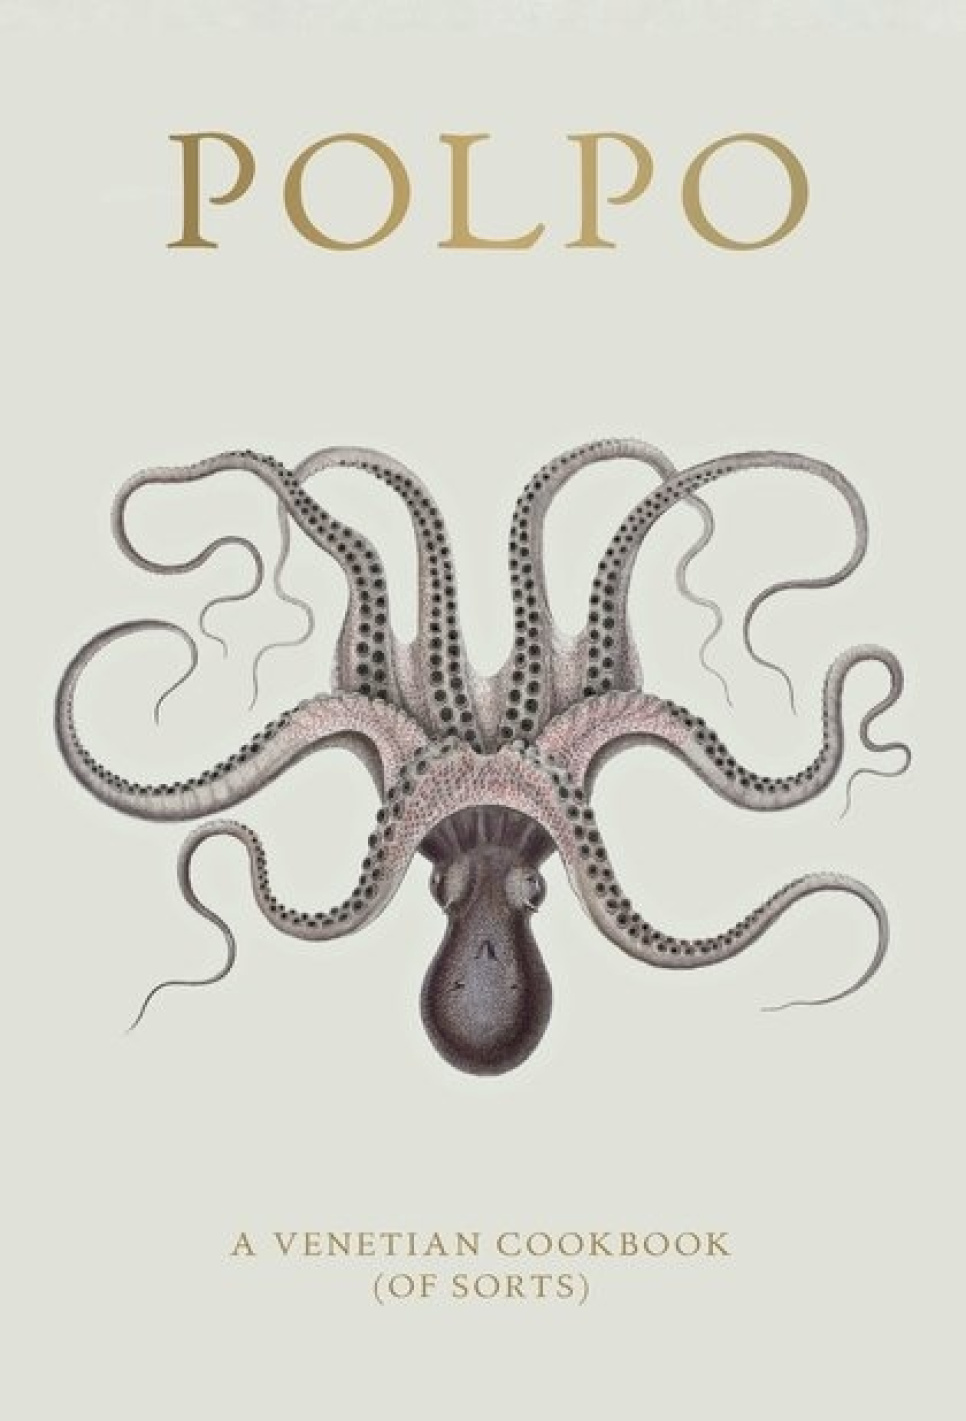 Polpo, ein venezianisches Kochbuch (der Sorte) - Russel Norman in der Gruppe Kochen / Kochbücher / Nationale & regionale Küche / Europa bei The Kitchen Lab (1987-26127)